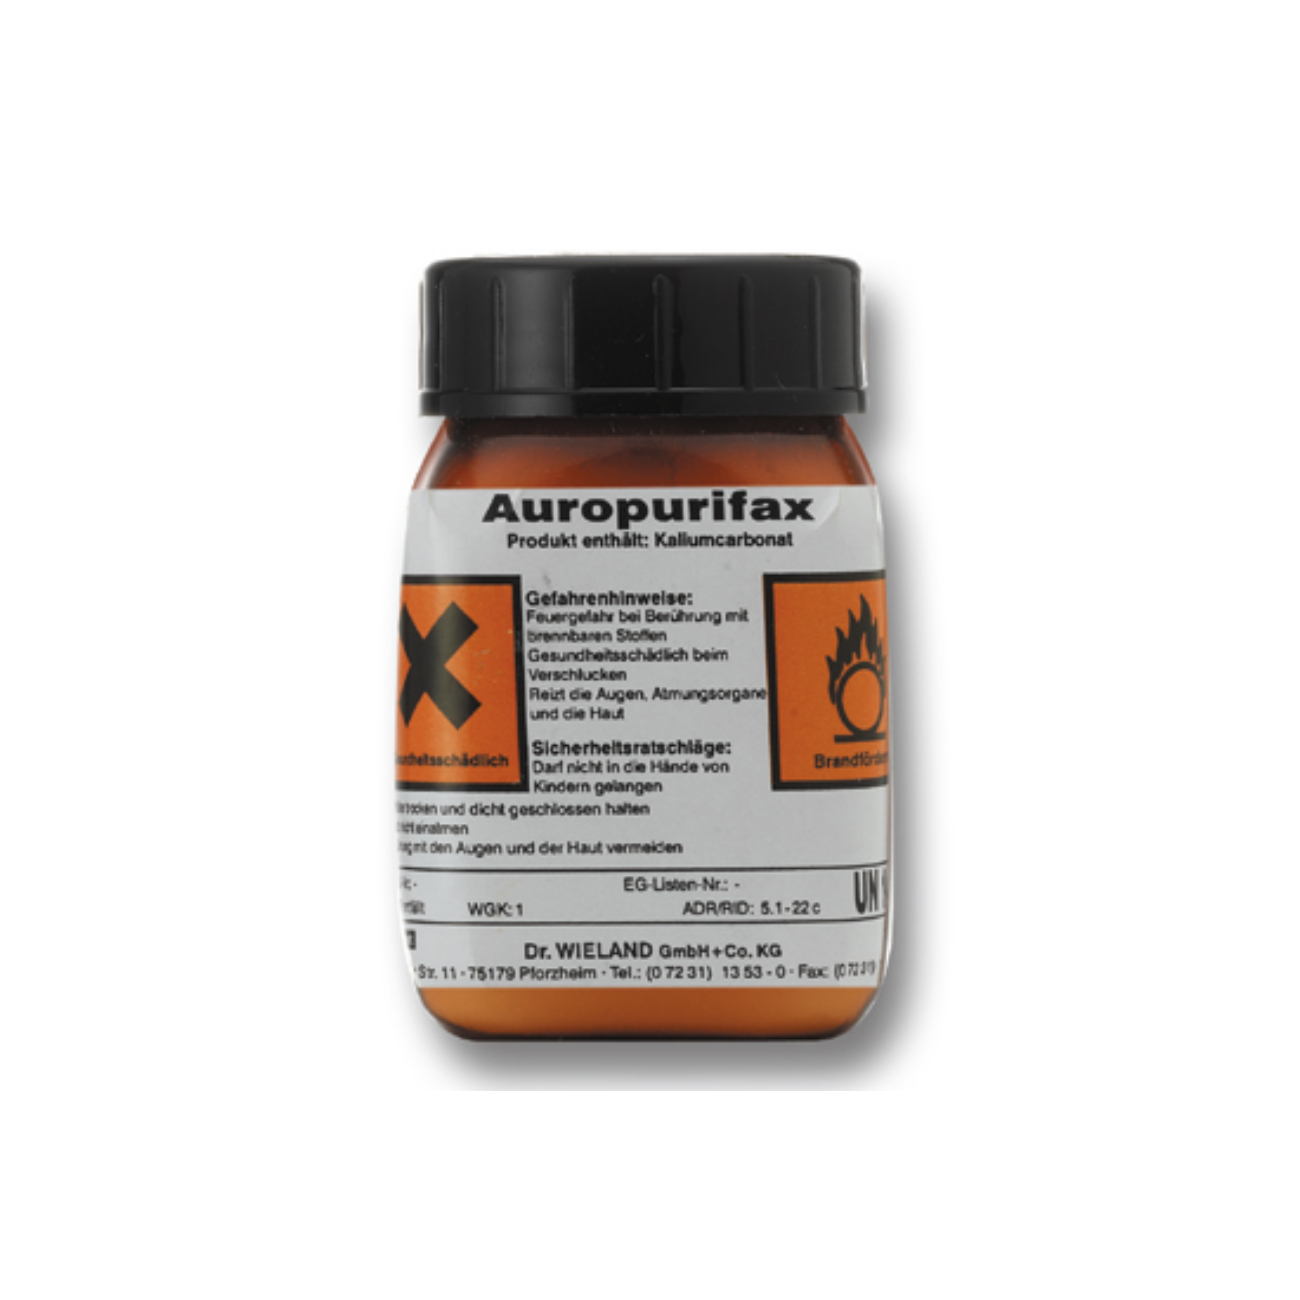 AUROPURIFAX 45 ml